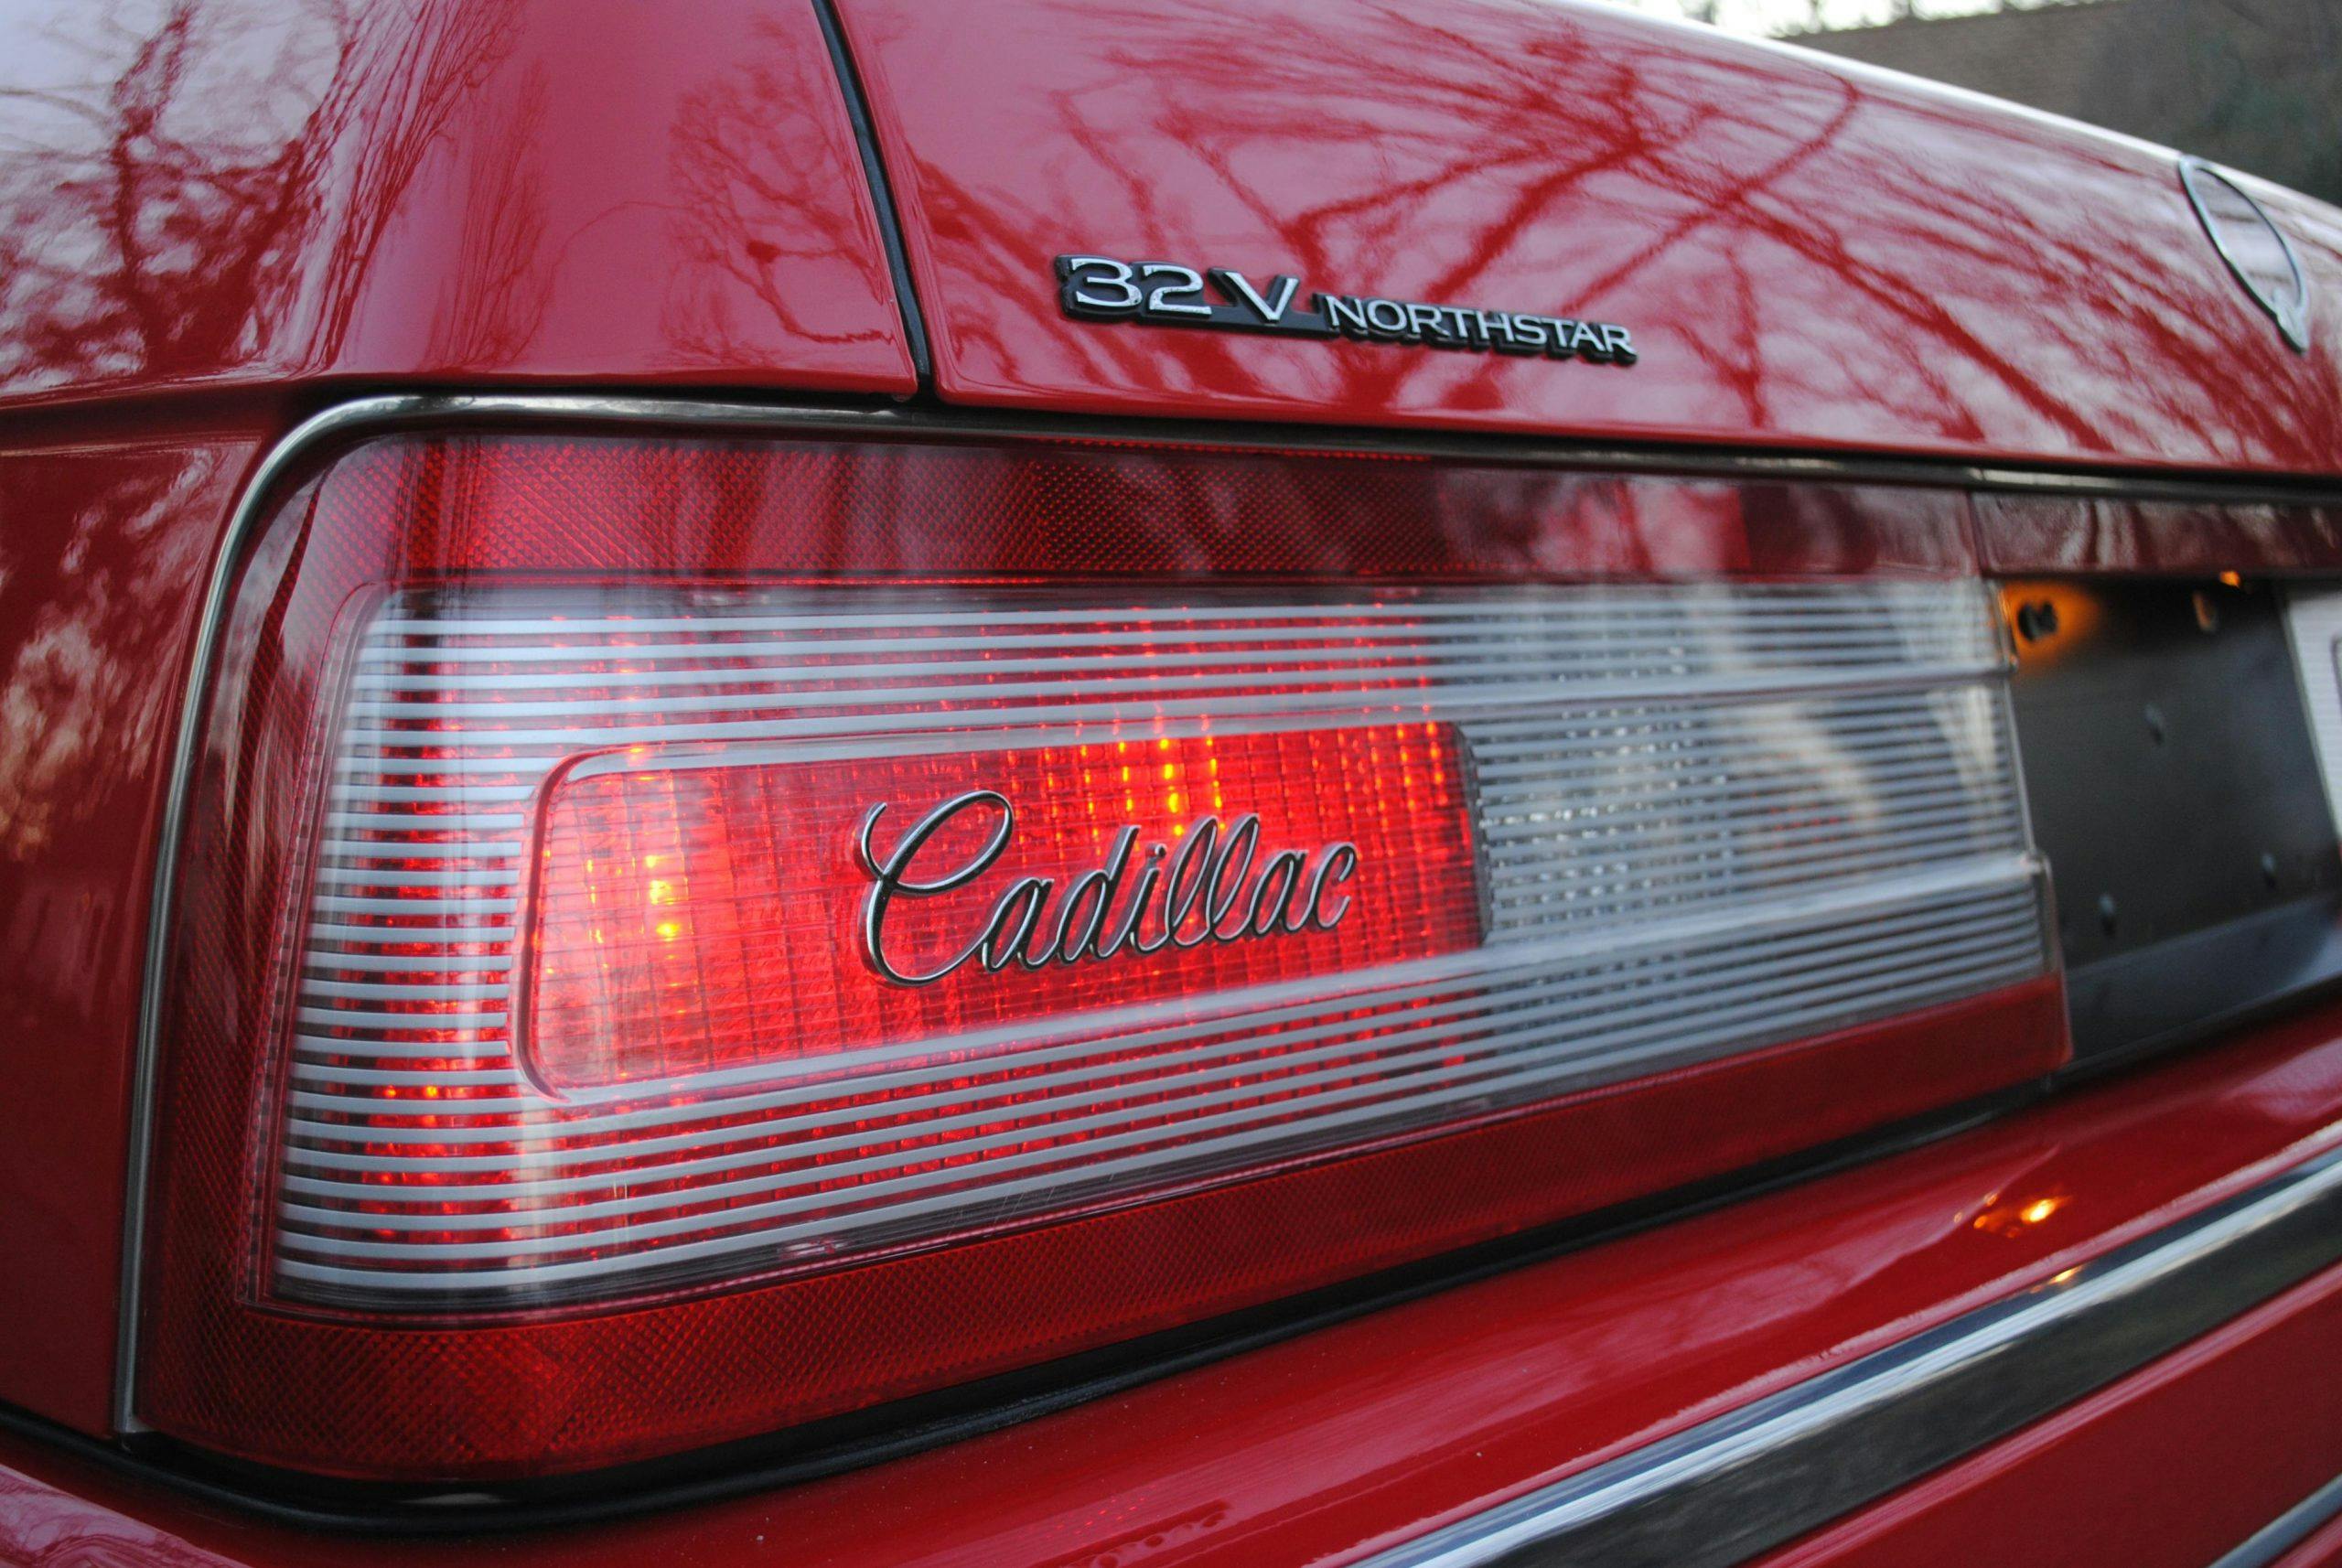 1993 Cadillac Allante taillight